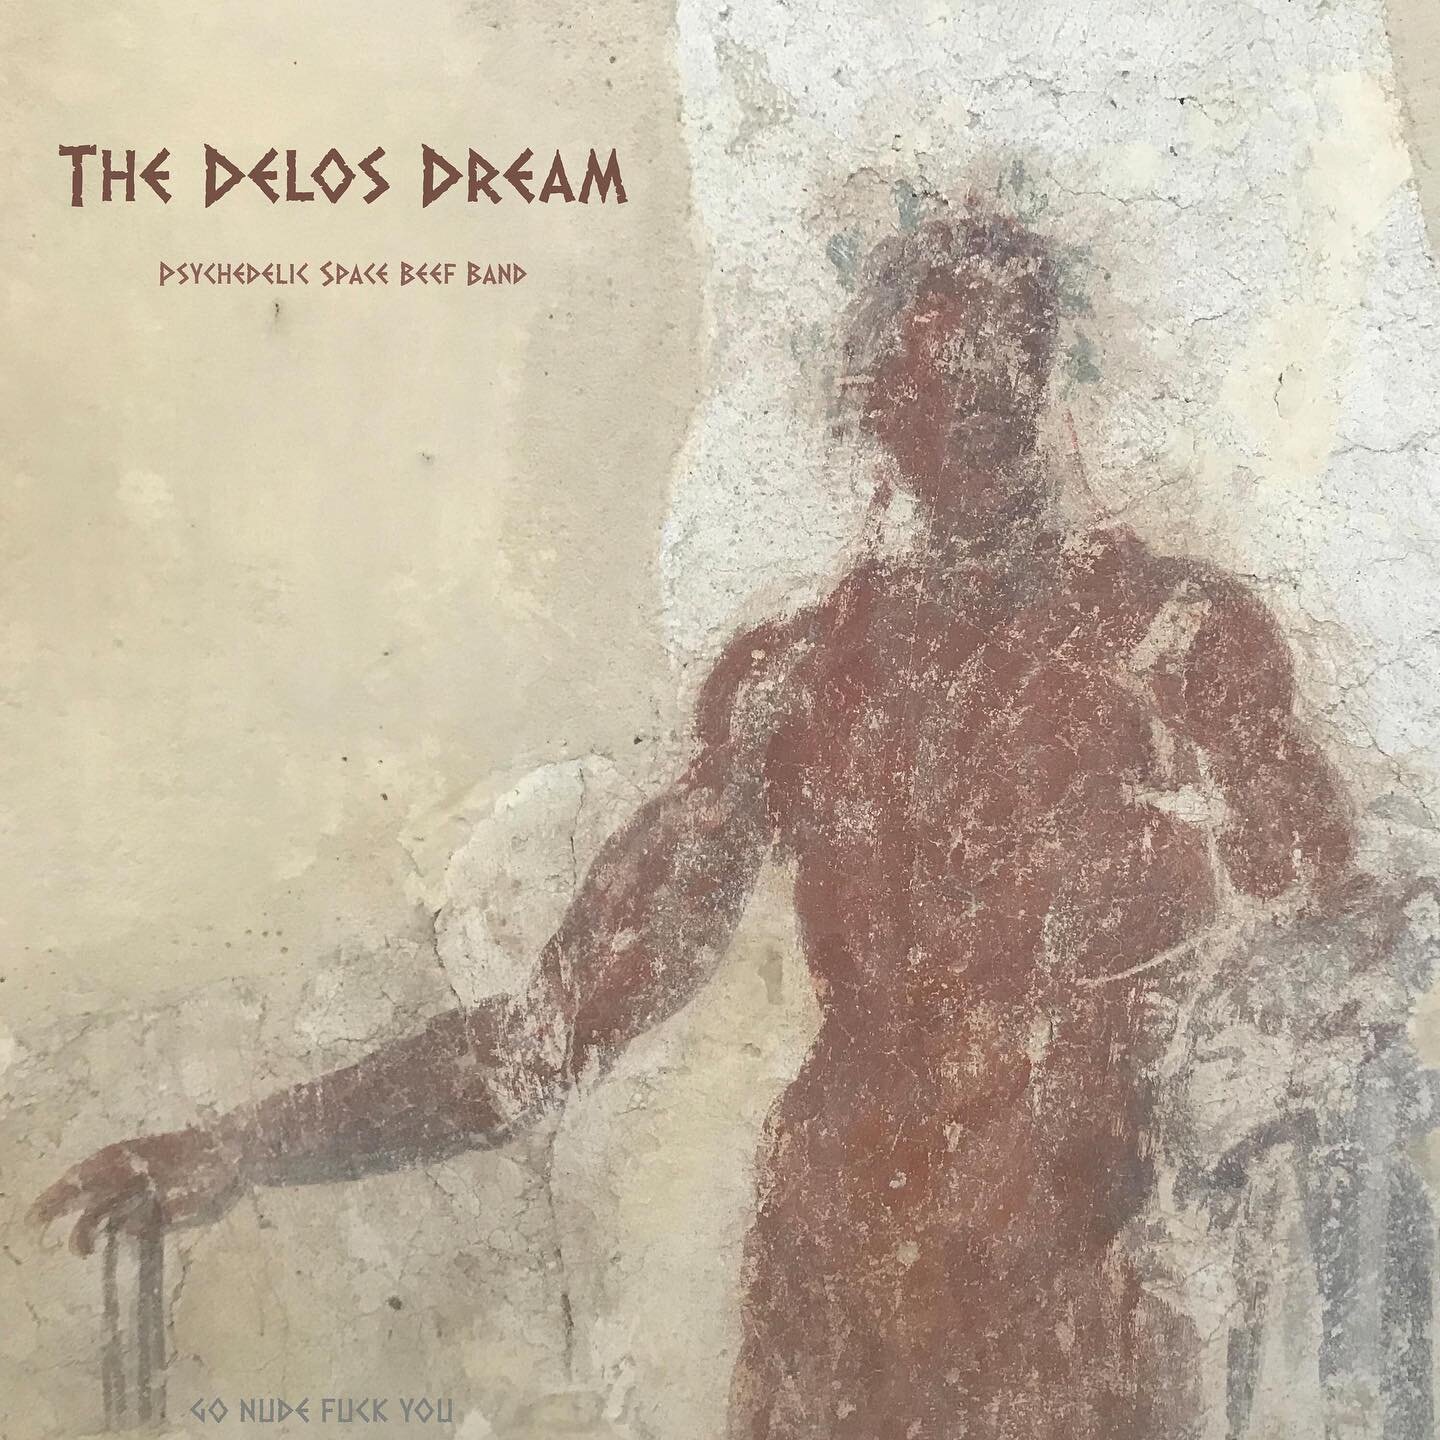 The Delos Dream